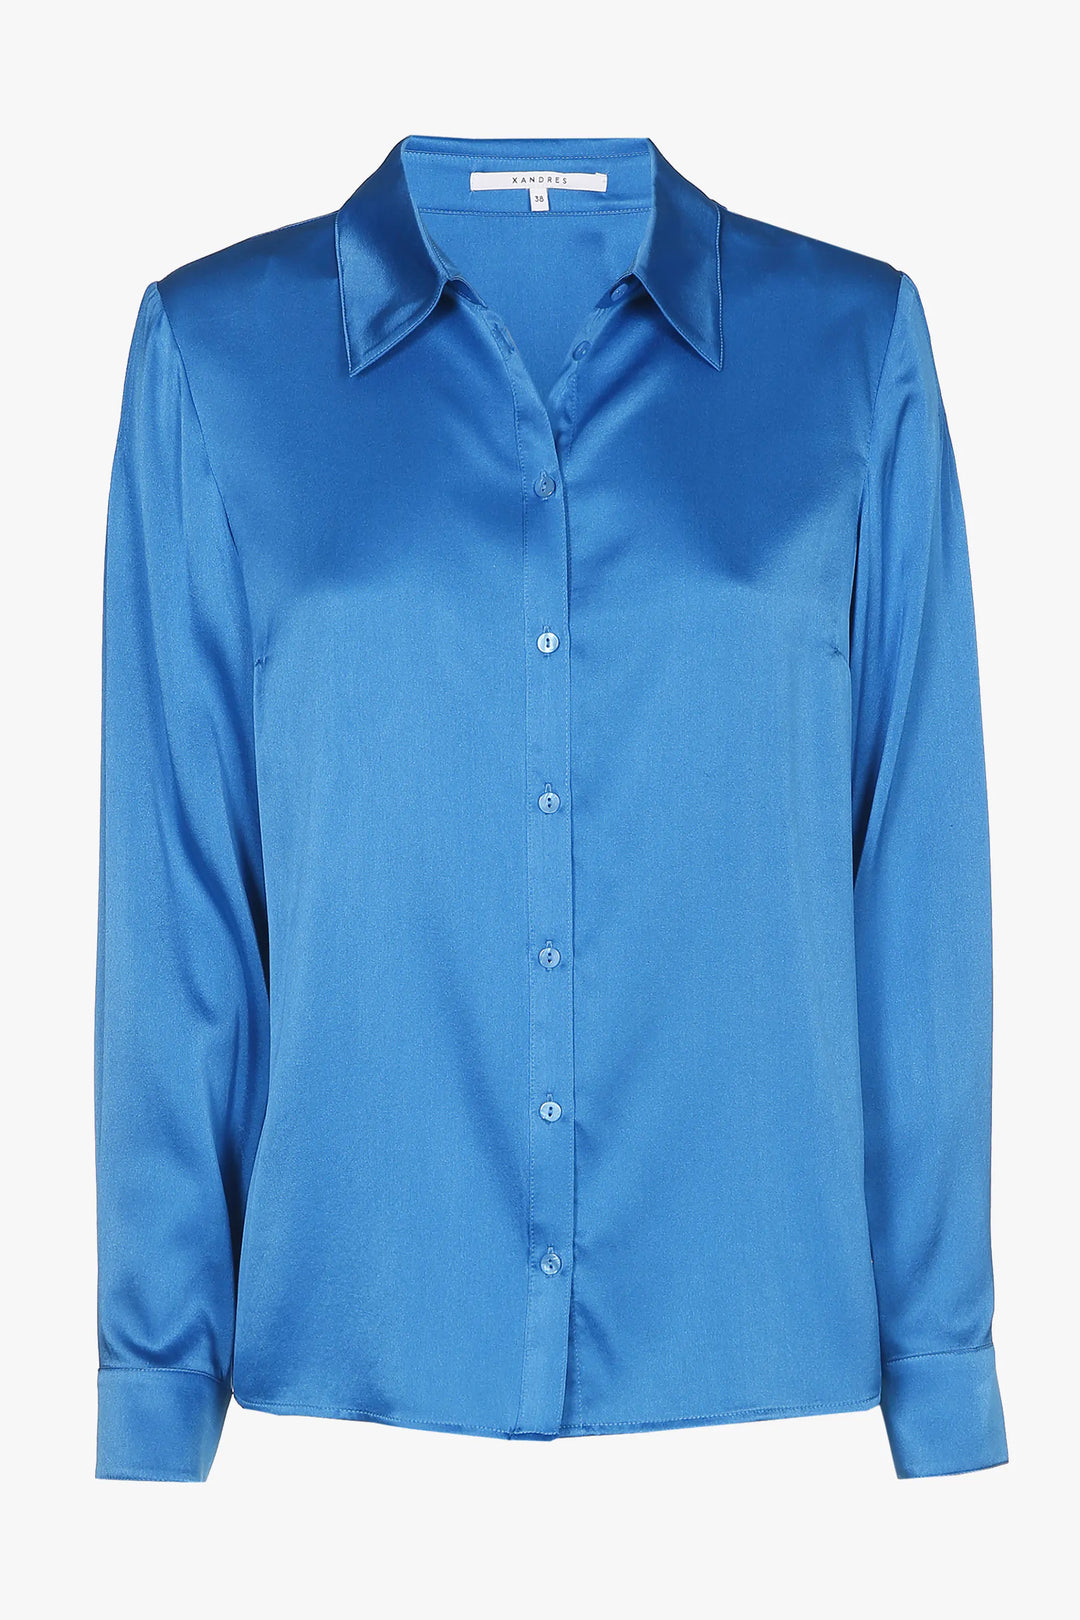 zijde blouse in miami blue - xandres - - grote maten - dameskleding - kledingwinkel - herent - leuven